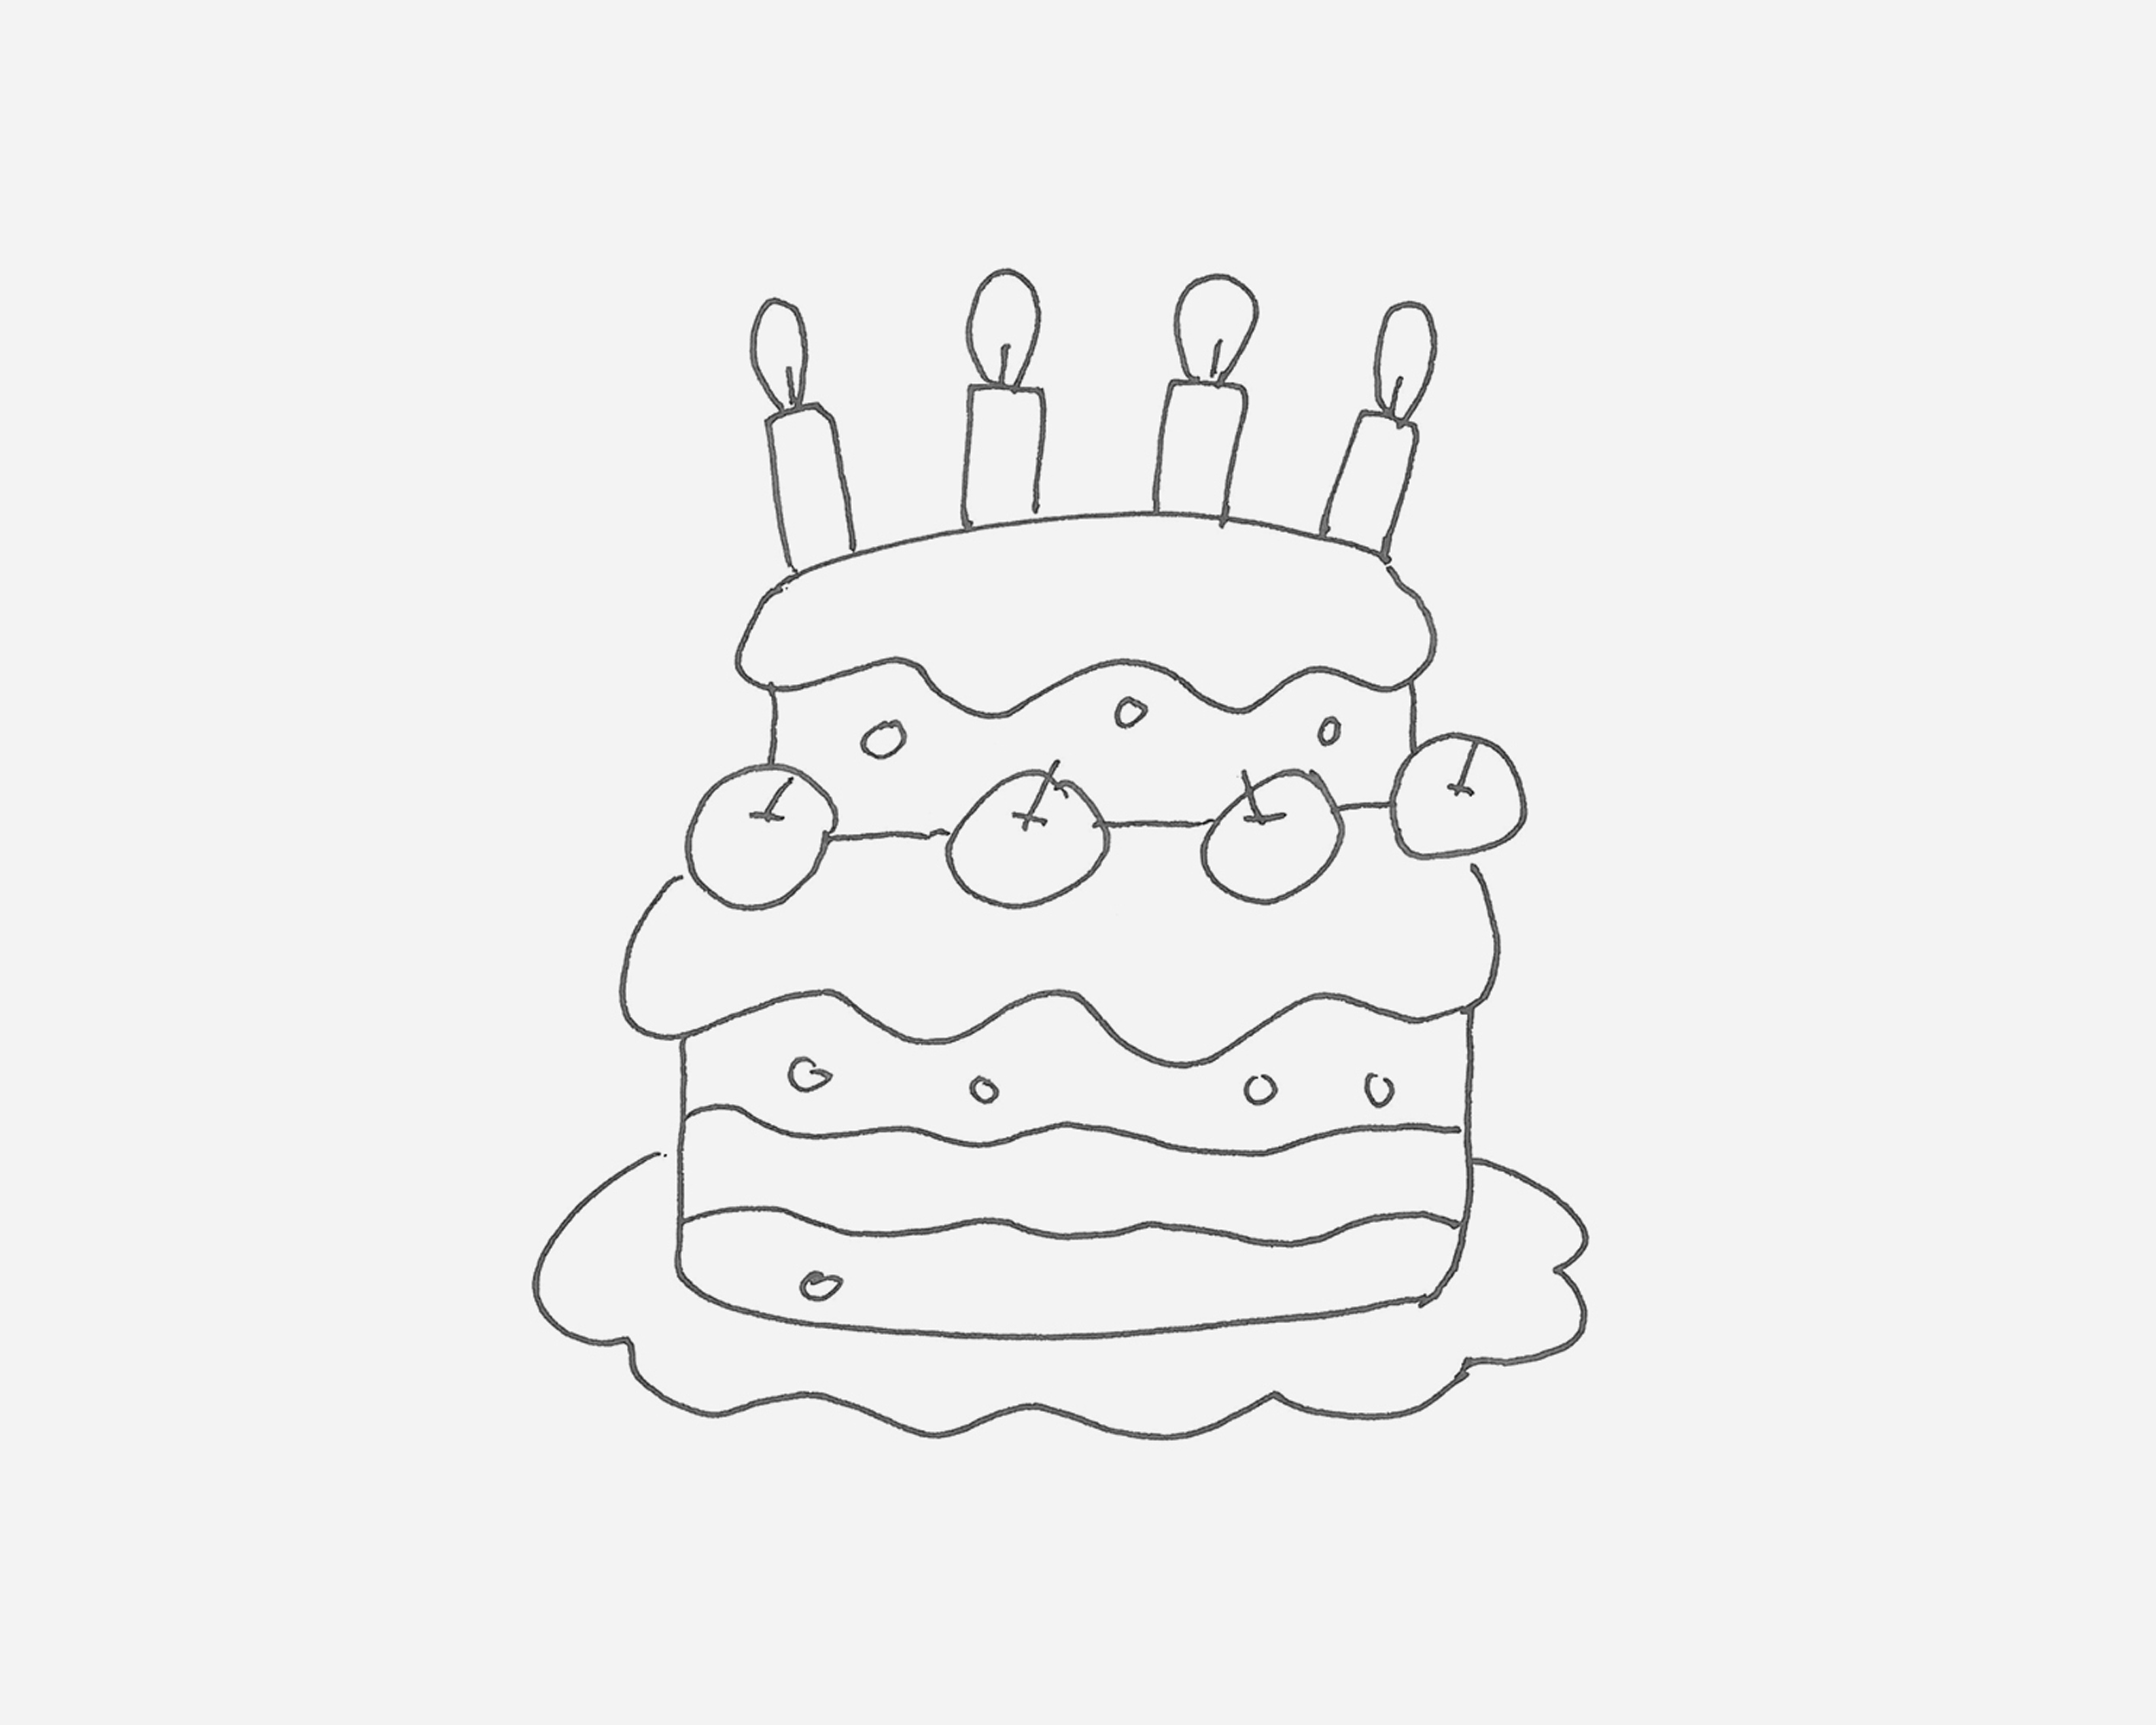 二层生日蛋糕简笔画图片素材免费下载 - 觅知网